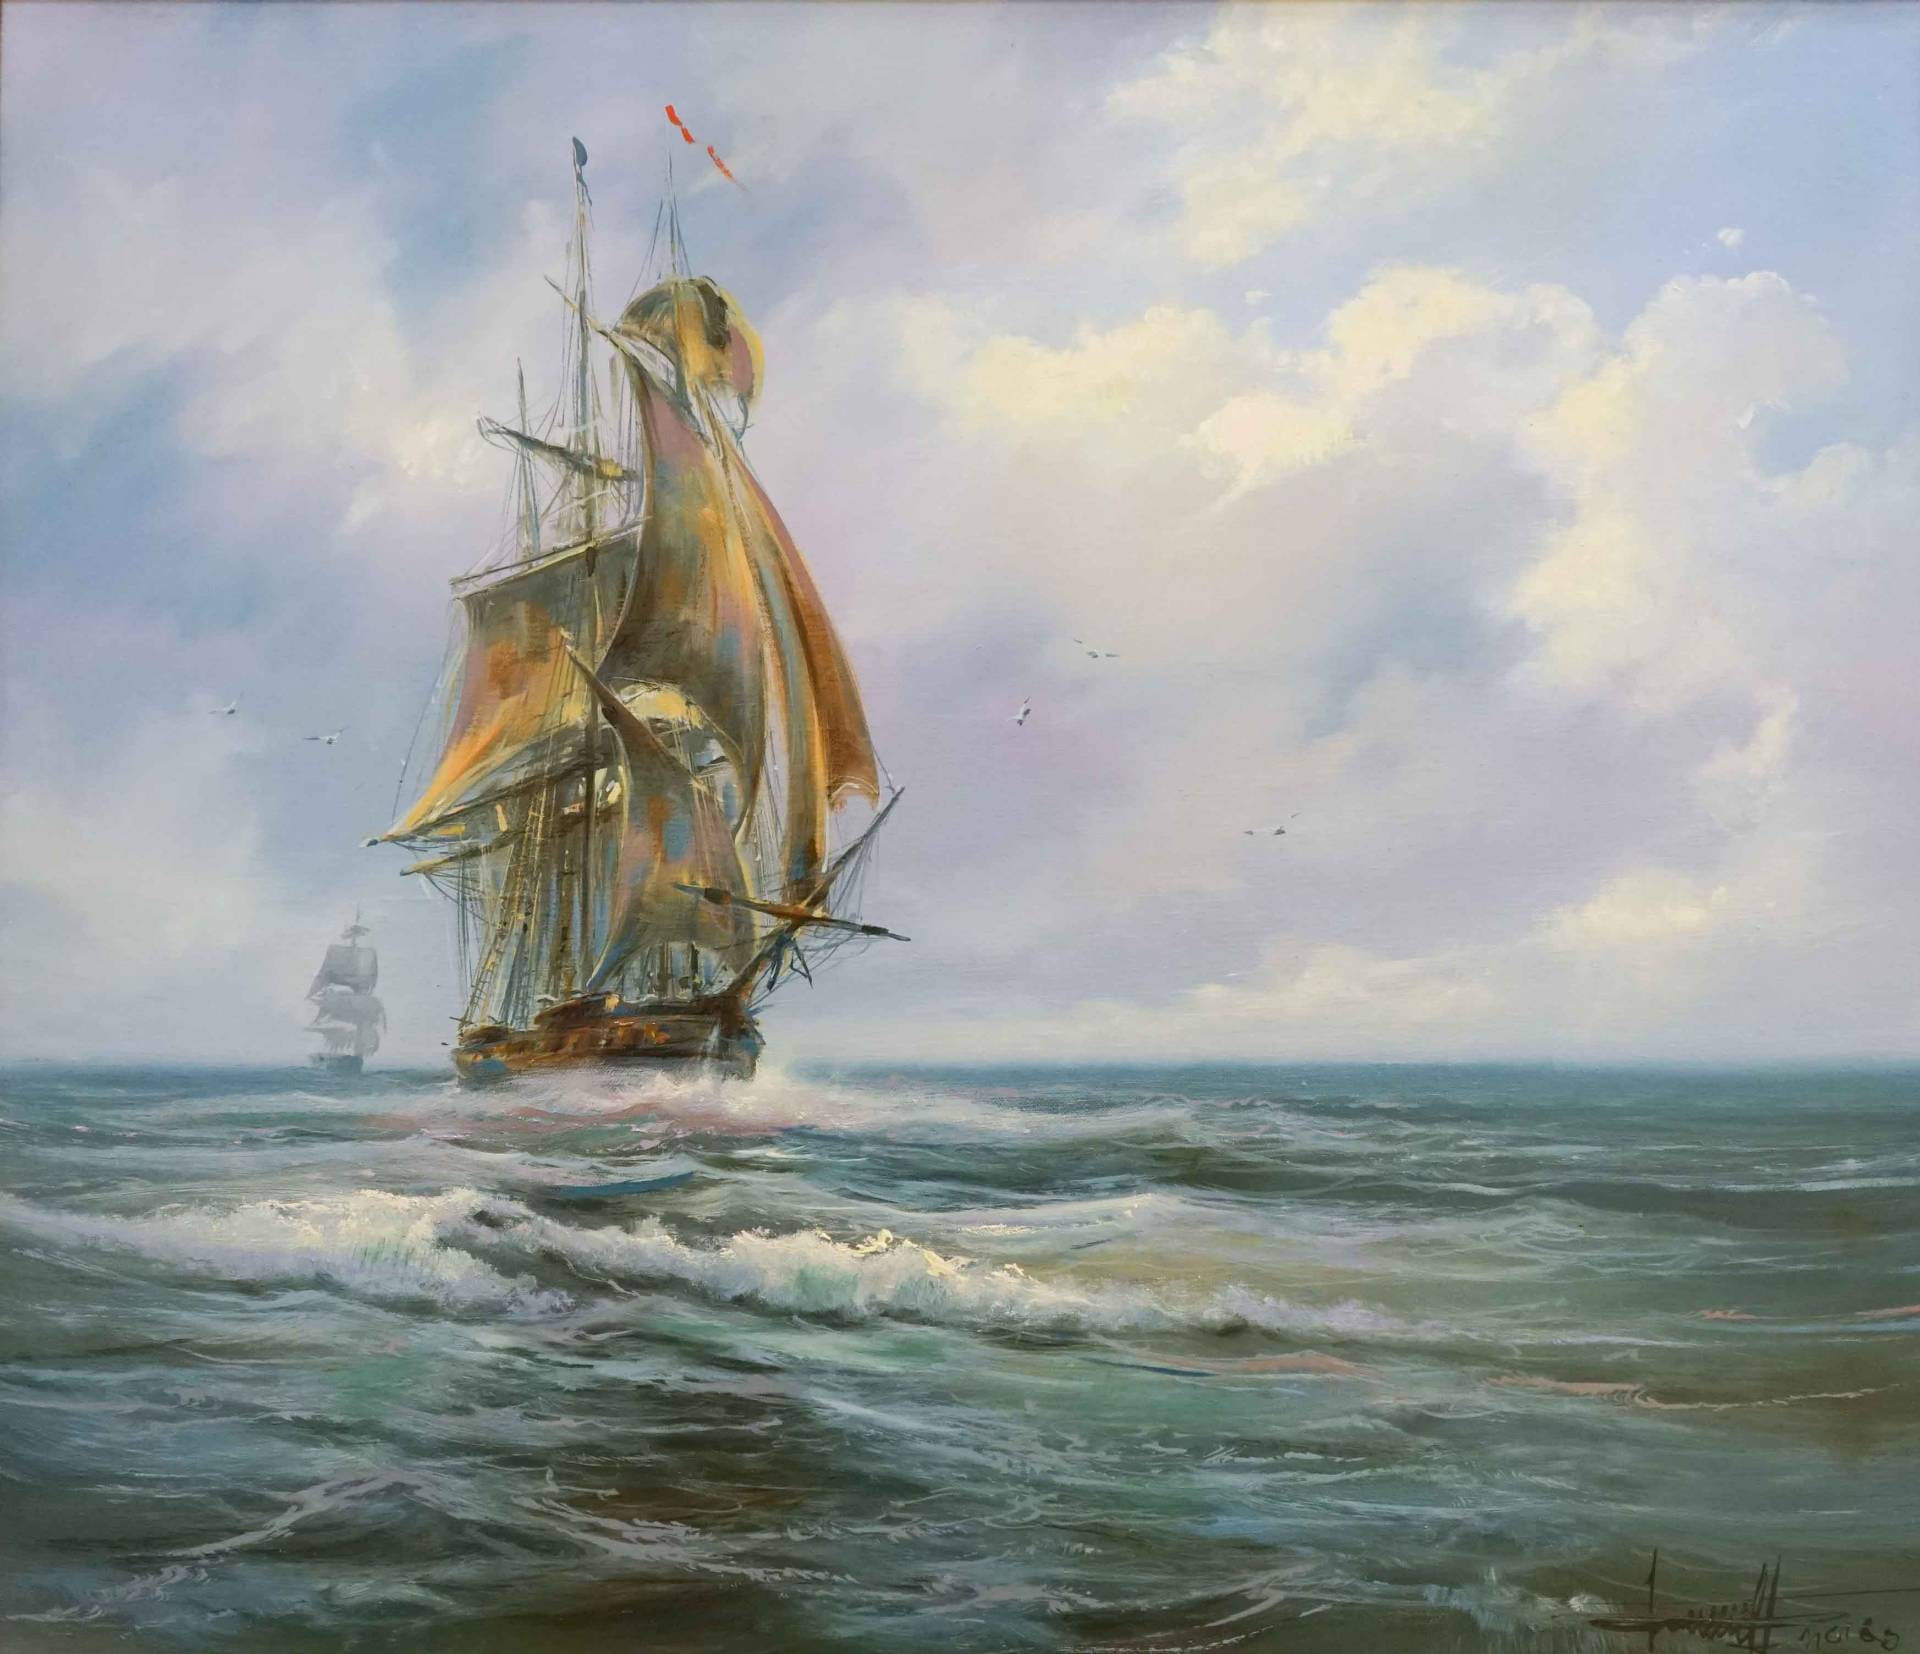 Sailboat - 1, Dmitry Balakhonov, Buy the painting Oil